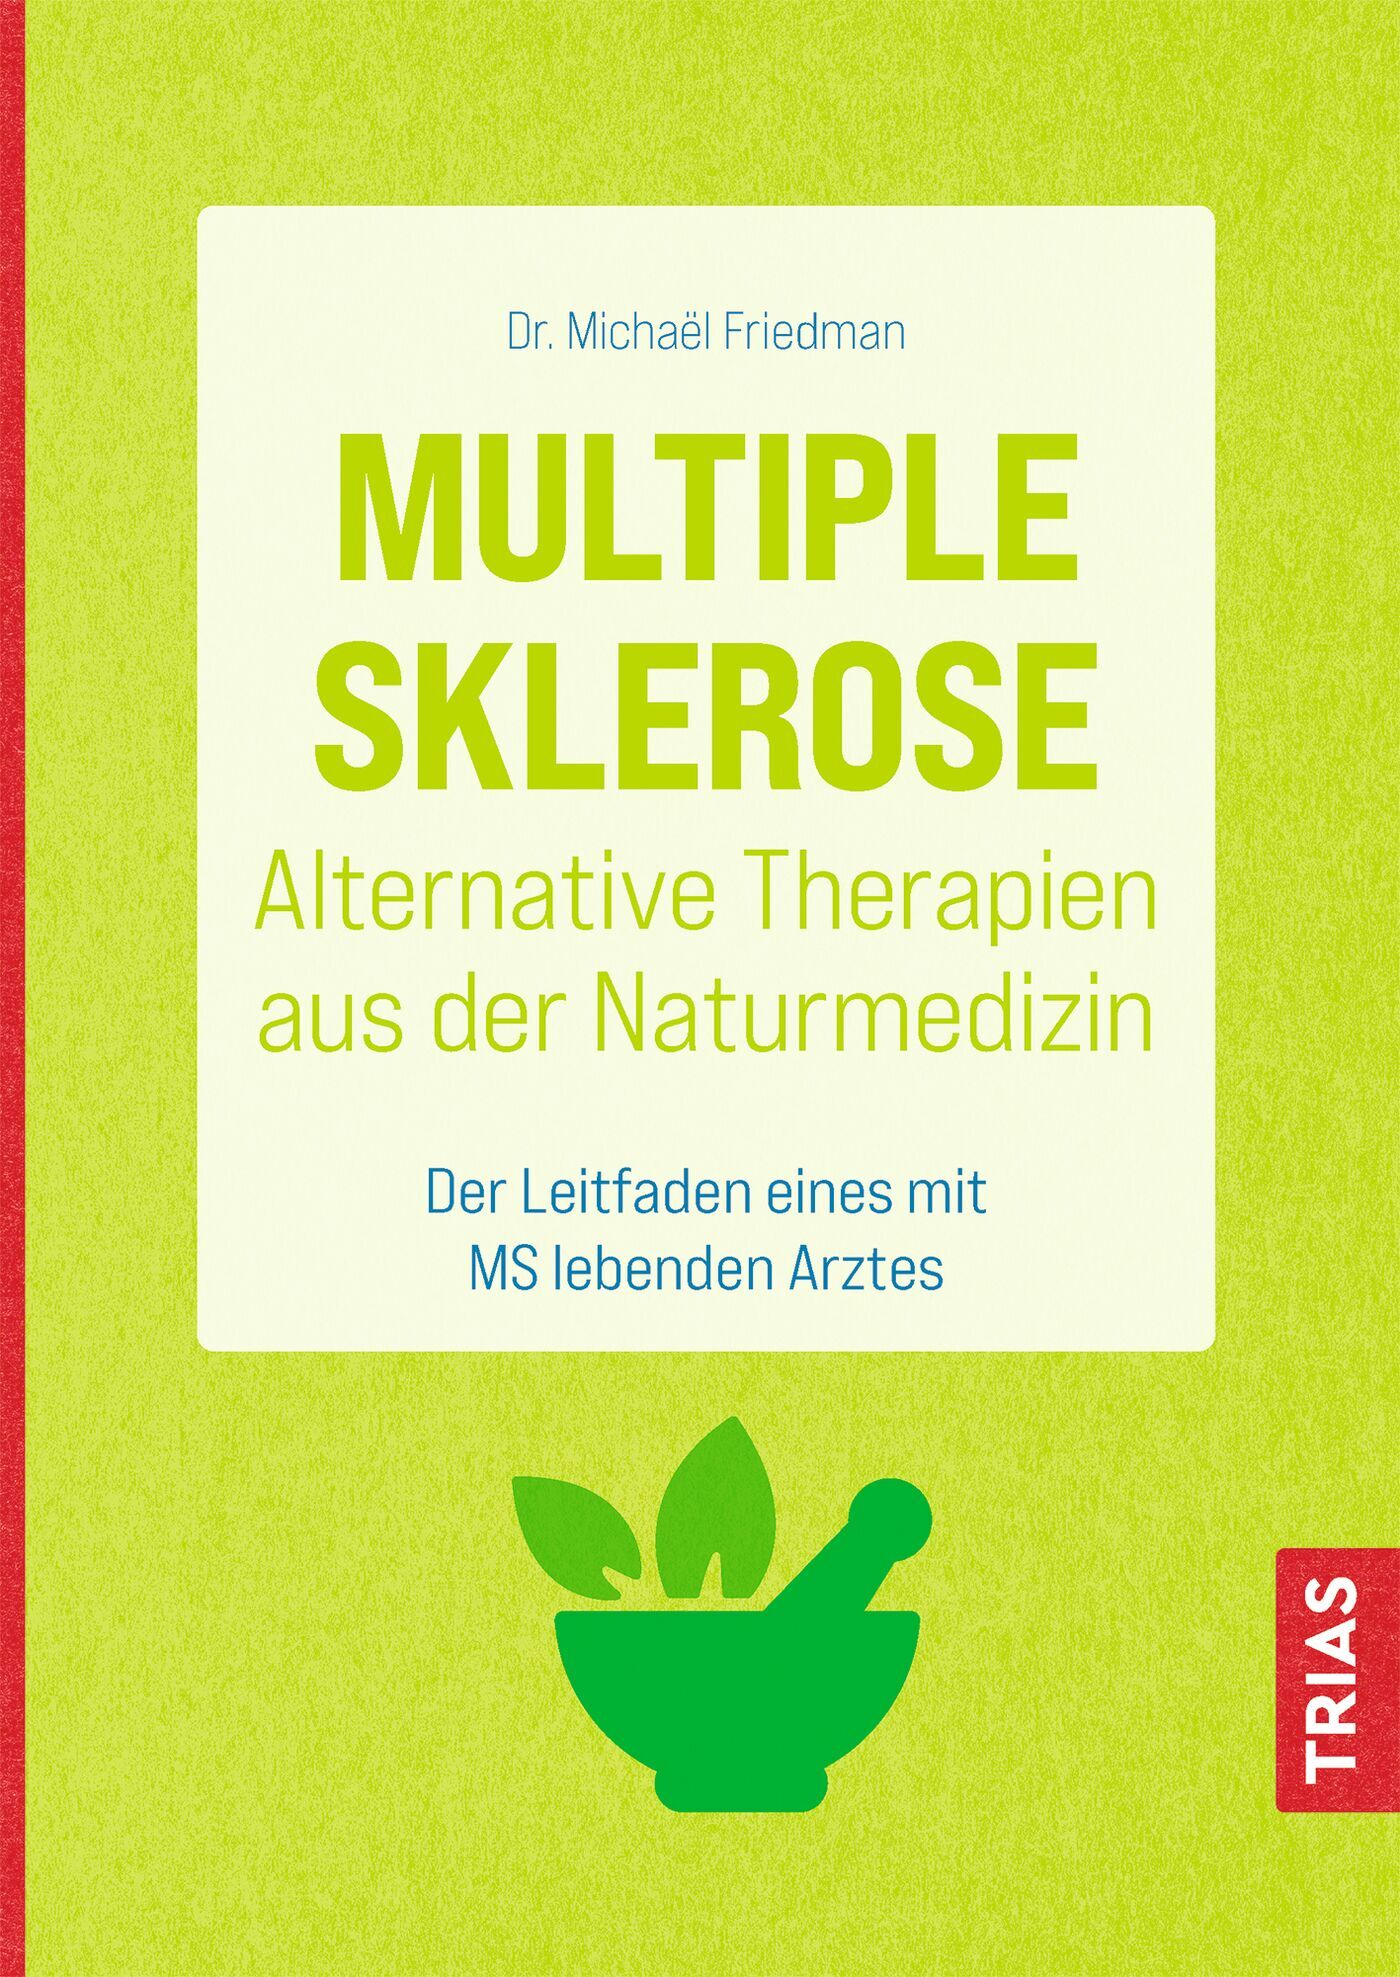 Multiple Sklerose - Alternative Therapien aus der Naturmedizin, 9783432114606